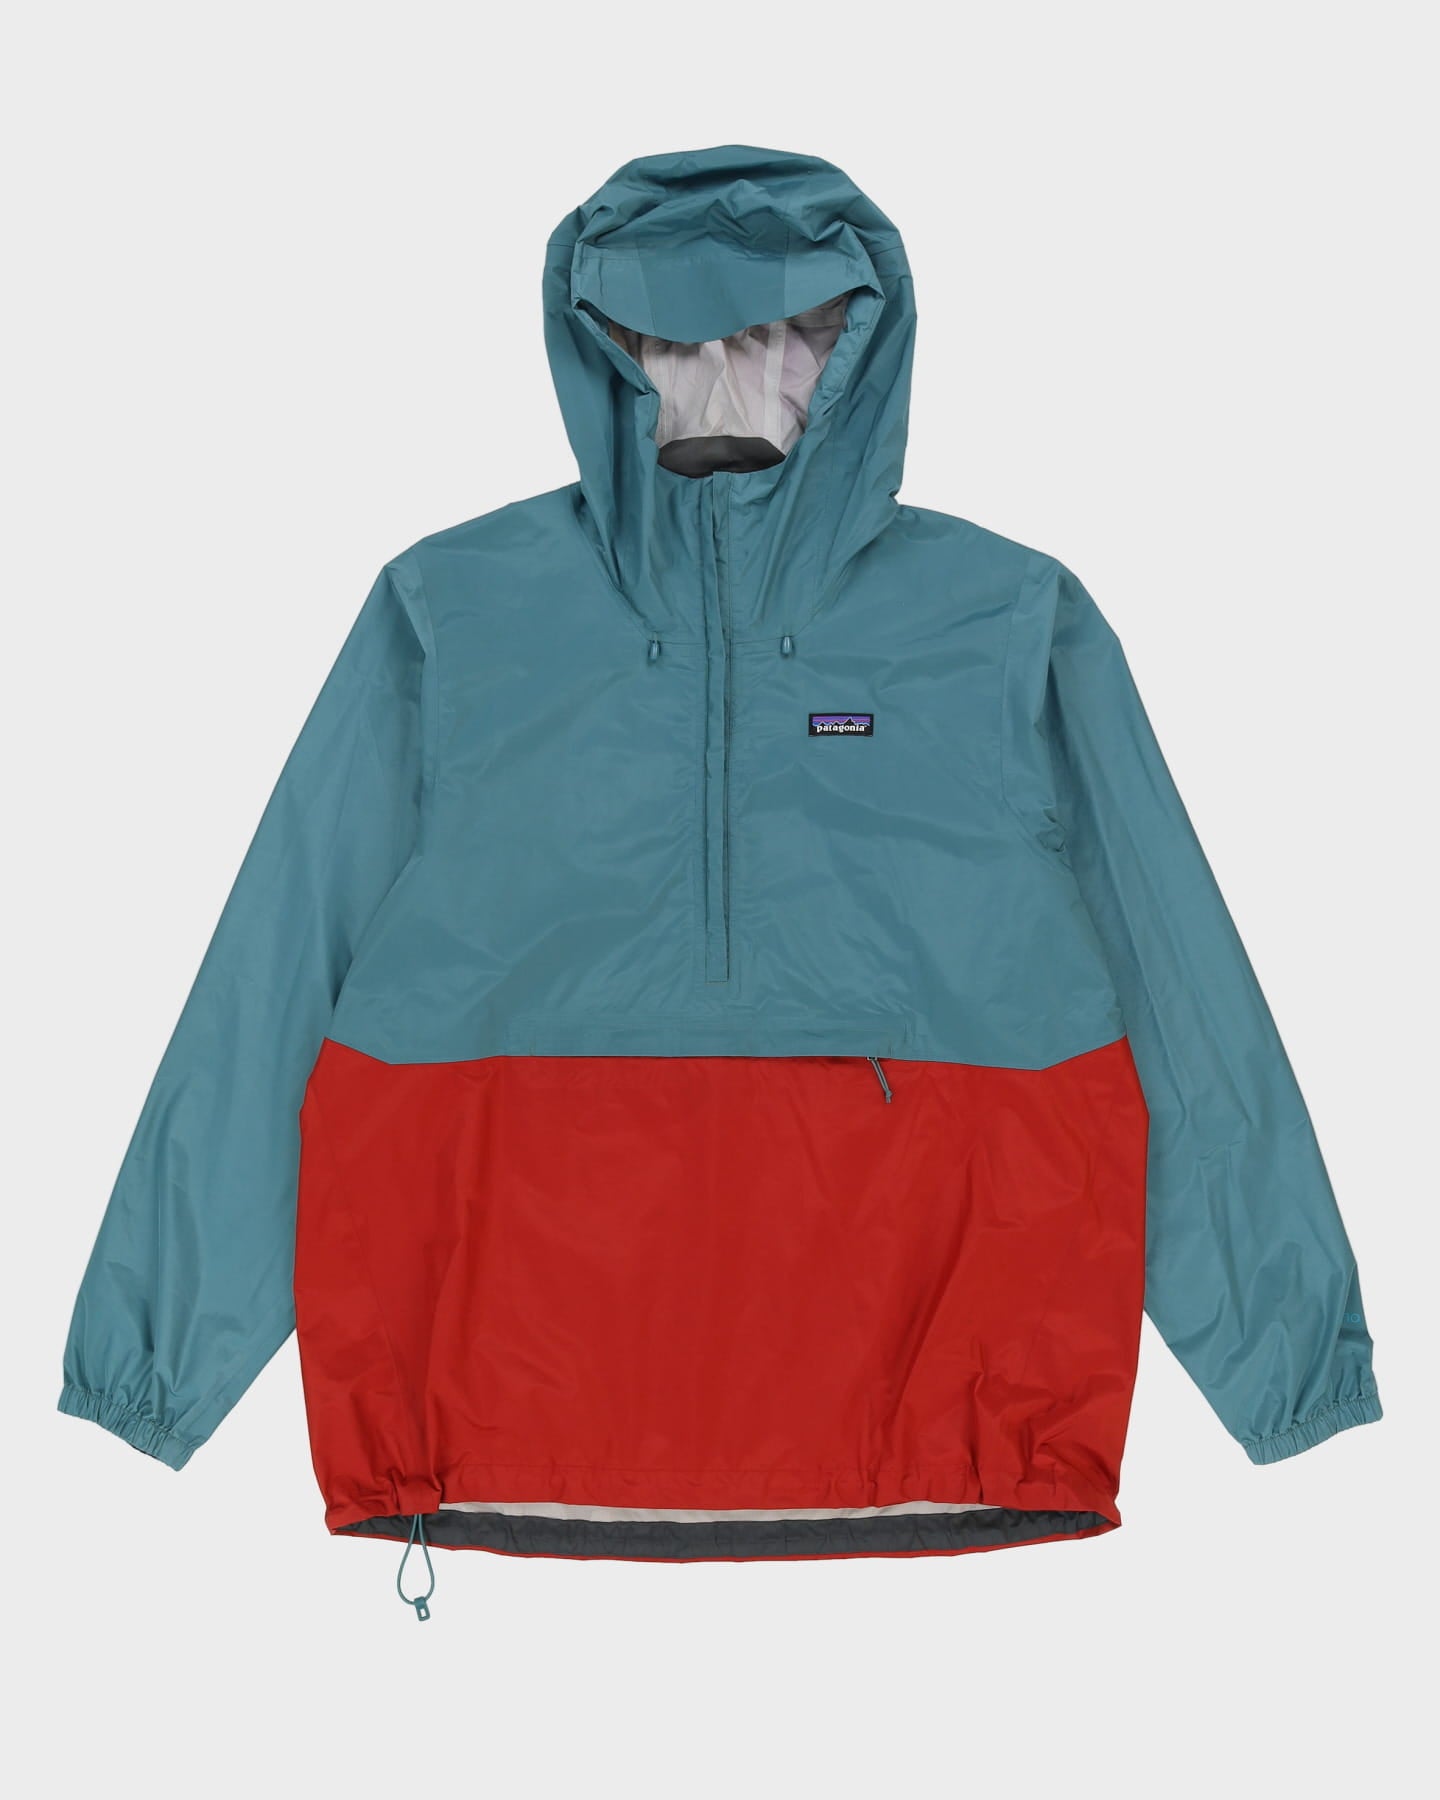 Patagonia Blue / Orange Hooded Anorak Jacket - XL